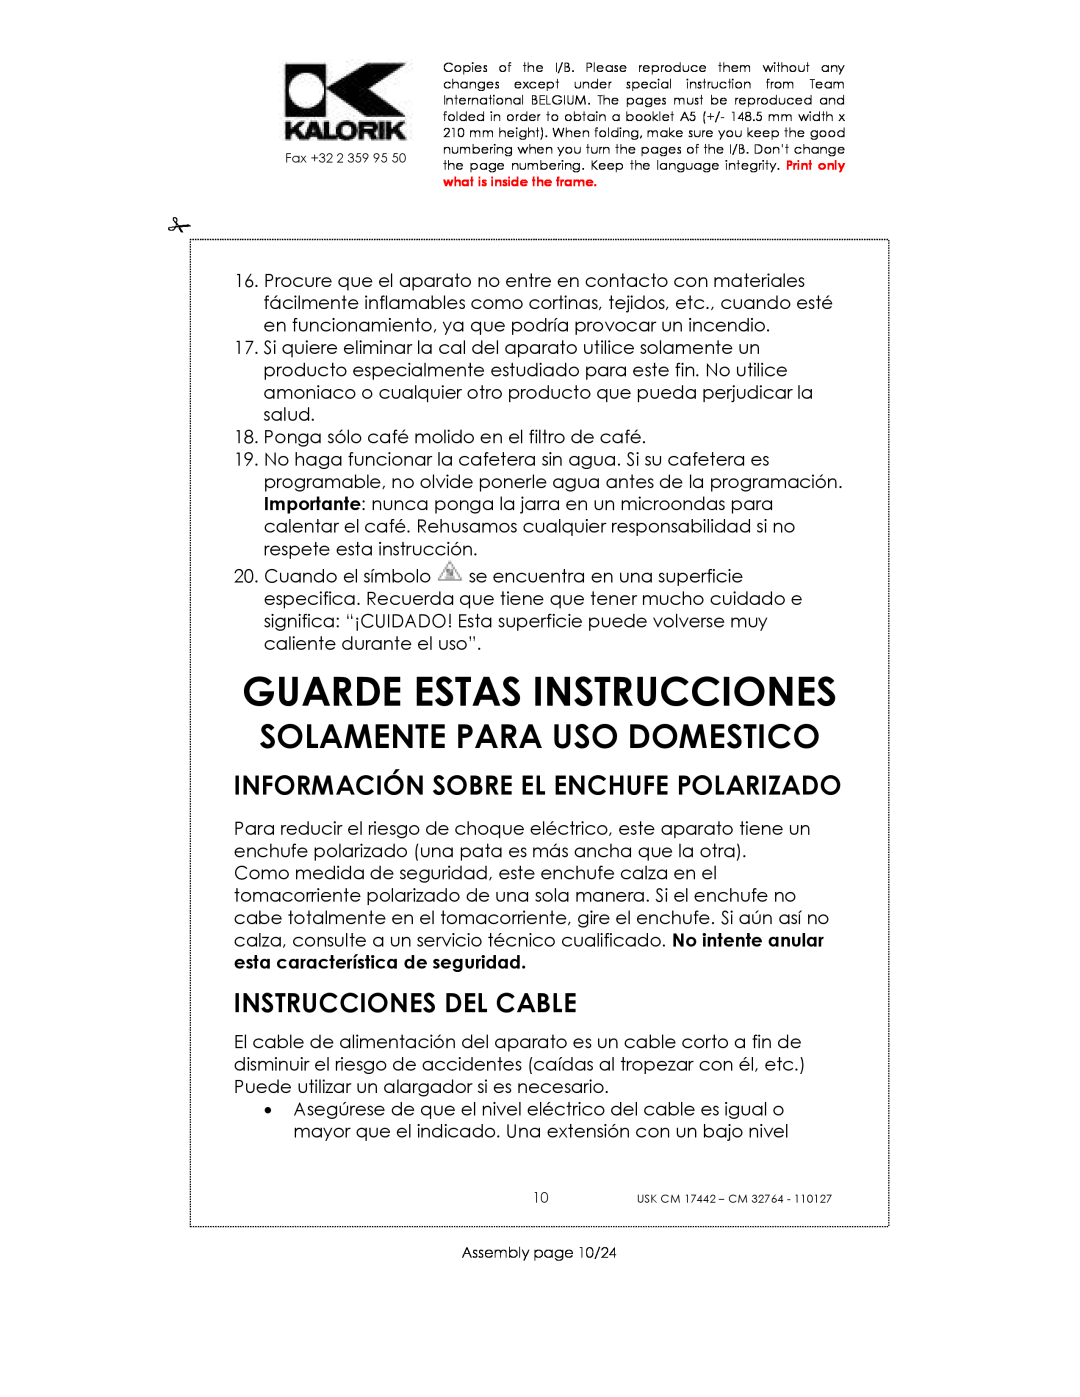 Kalorik USK CM 17442 manual Guarde Estas Instrucciones, Información Sobre El Enchufe Polarizado, Instrucciones Del Cable 